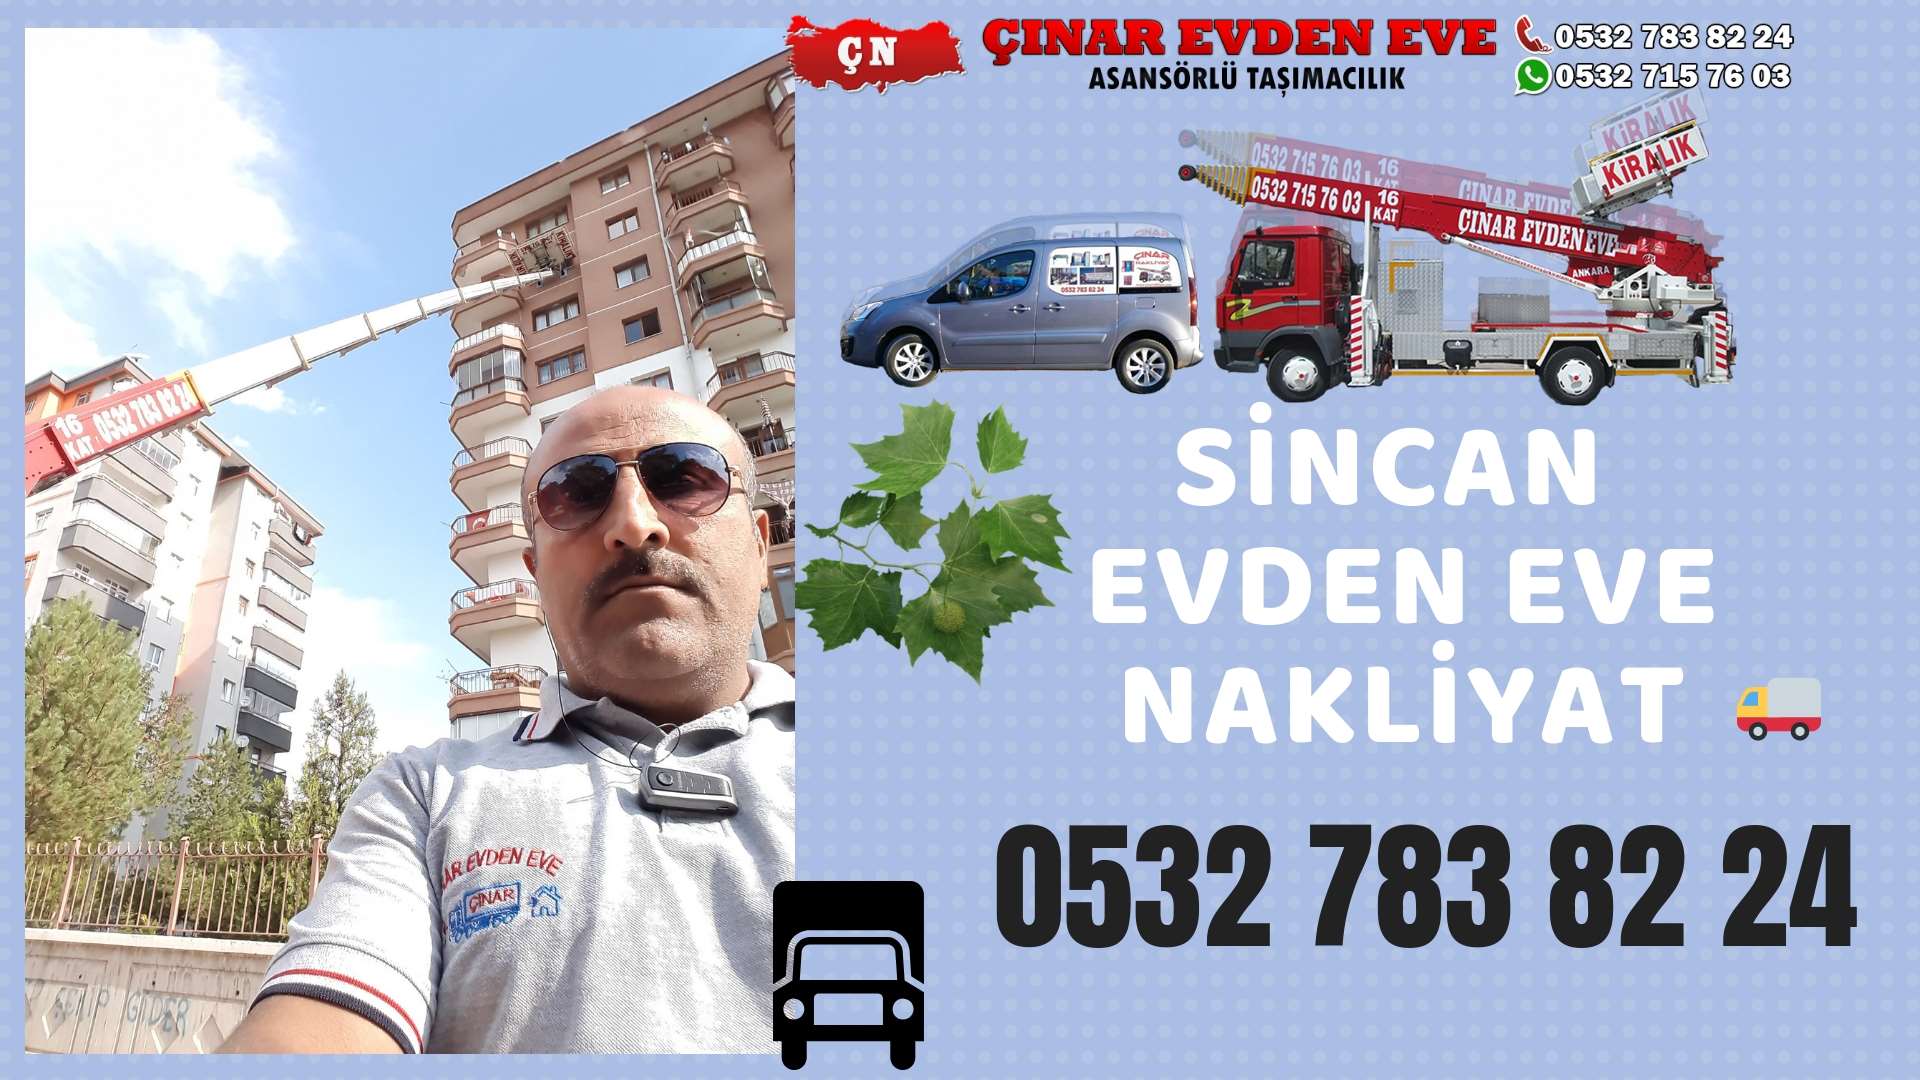 Ankara Güdül Evden Eve Nakliyat, Asansörlü Taşımacılık, Ofis / İş Yeri Taşıma 0532 715 76 03